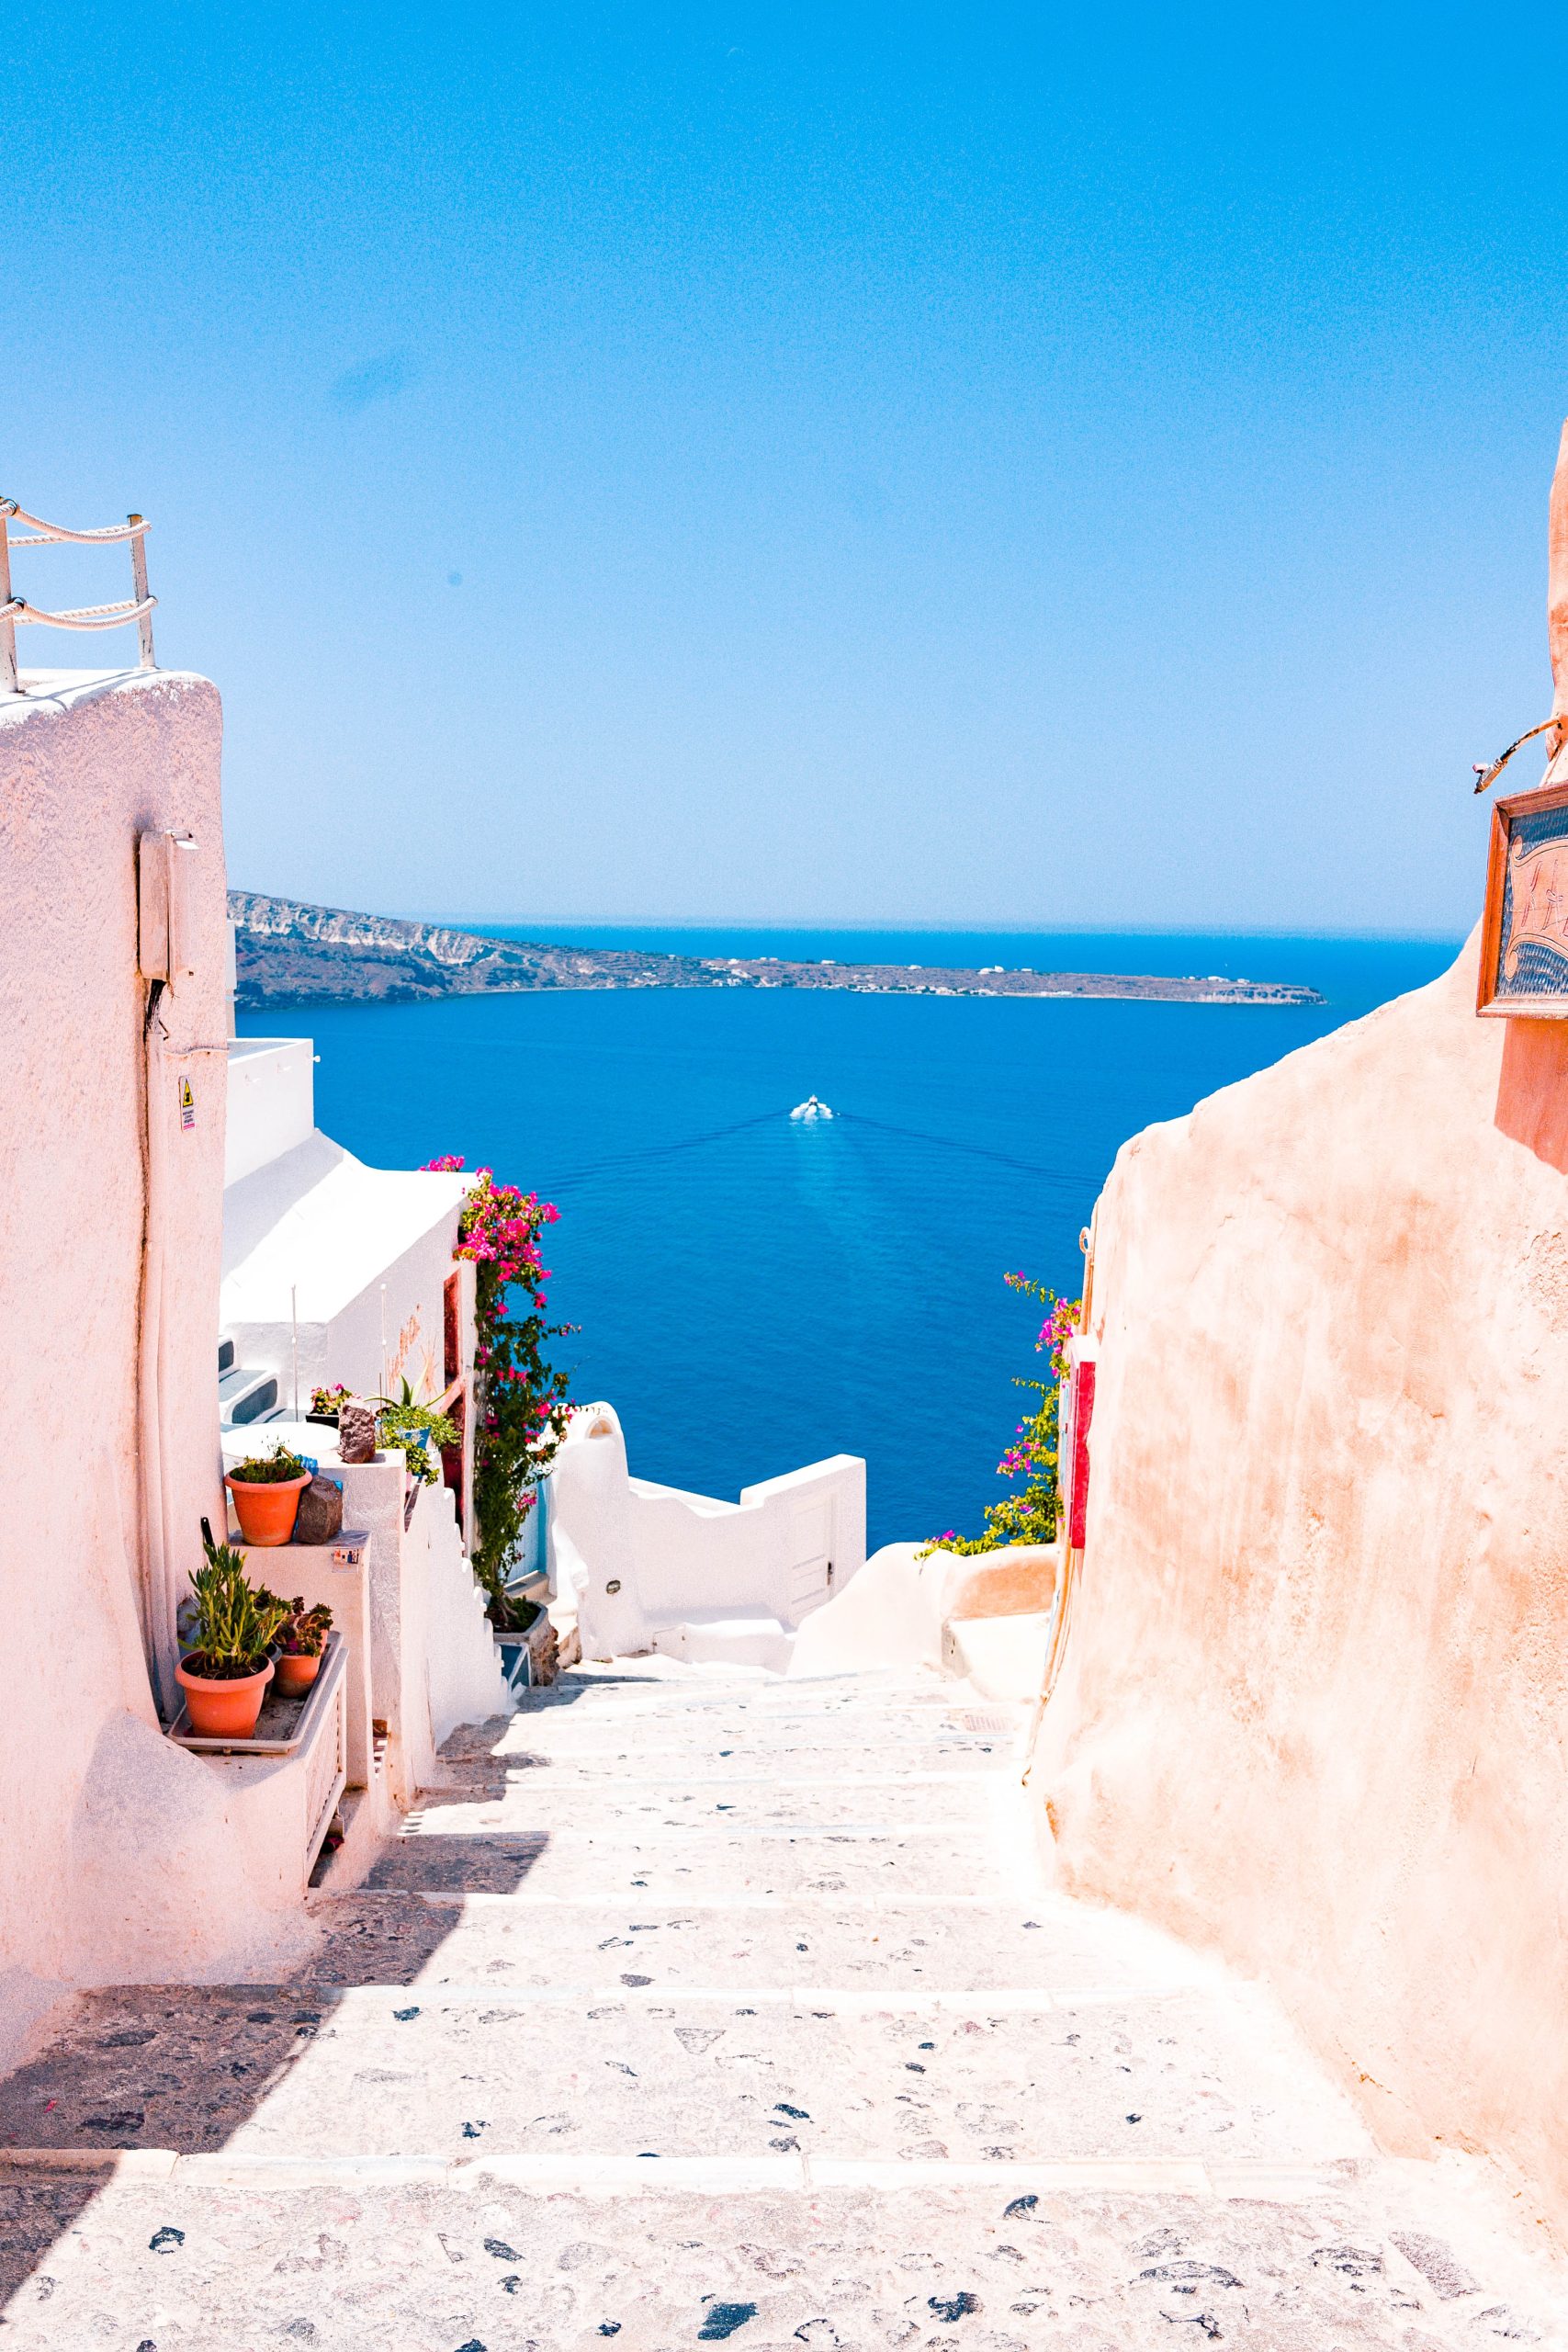 Goedkoop op vakantie in Griekenland